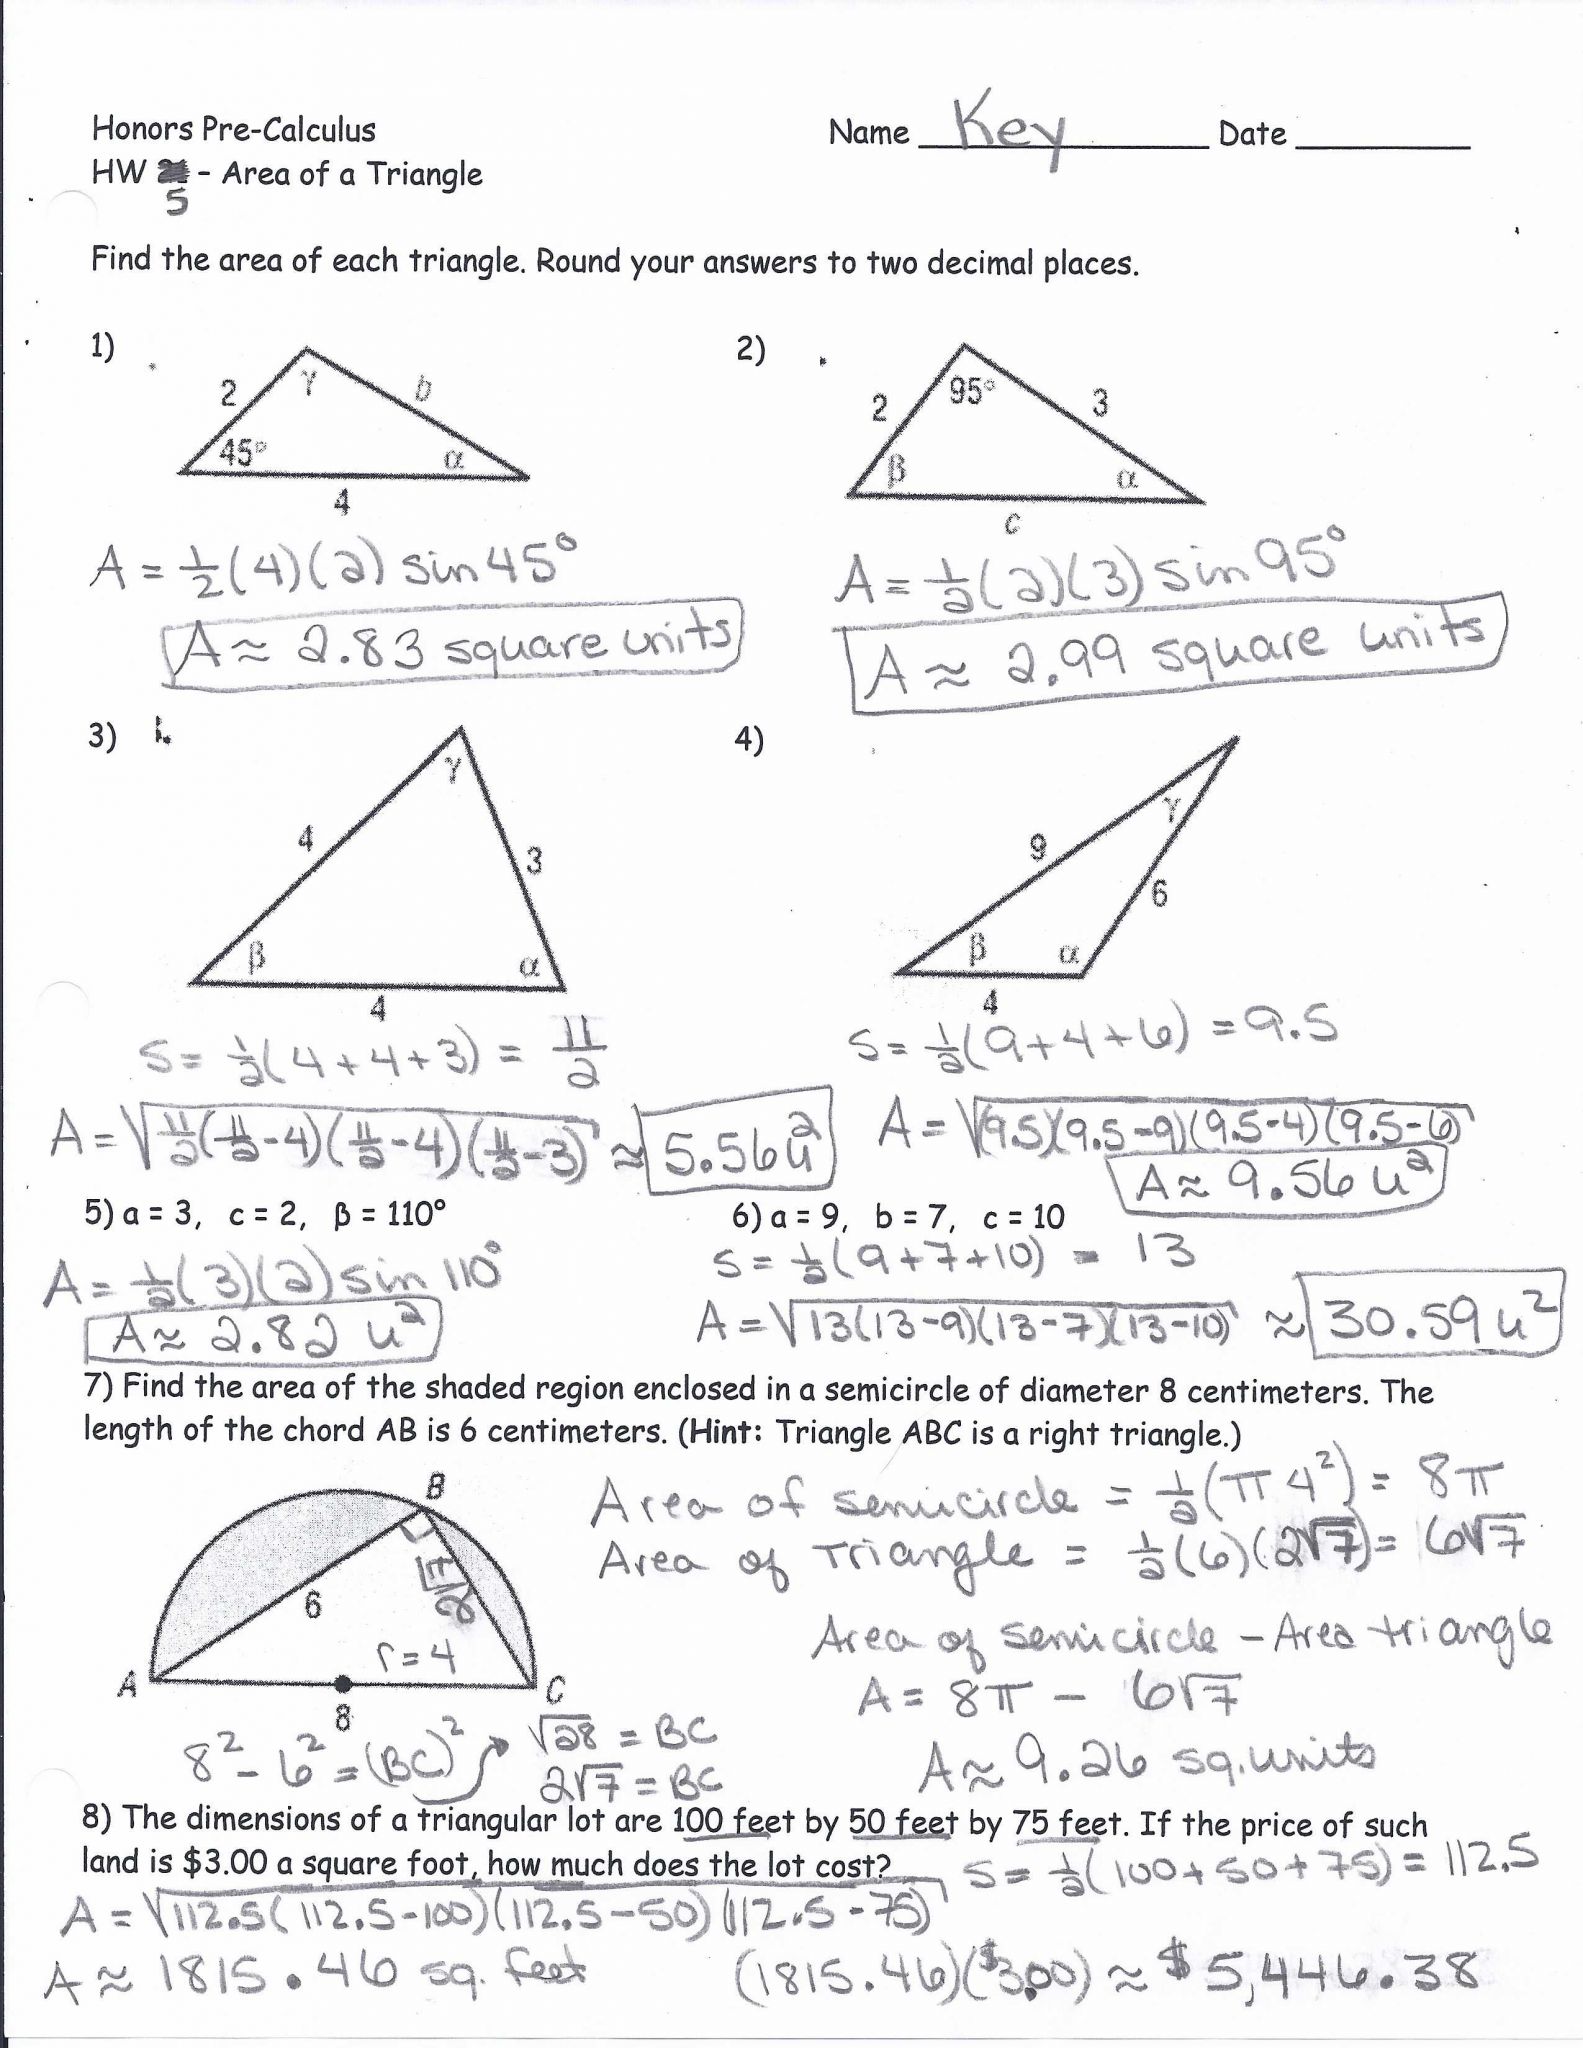 Triangle Angle Sum Worksheet Answer Key Along with Worksheet Trigonometric Ratios sohcahtoa Answer Key Elegant 188 Best